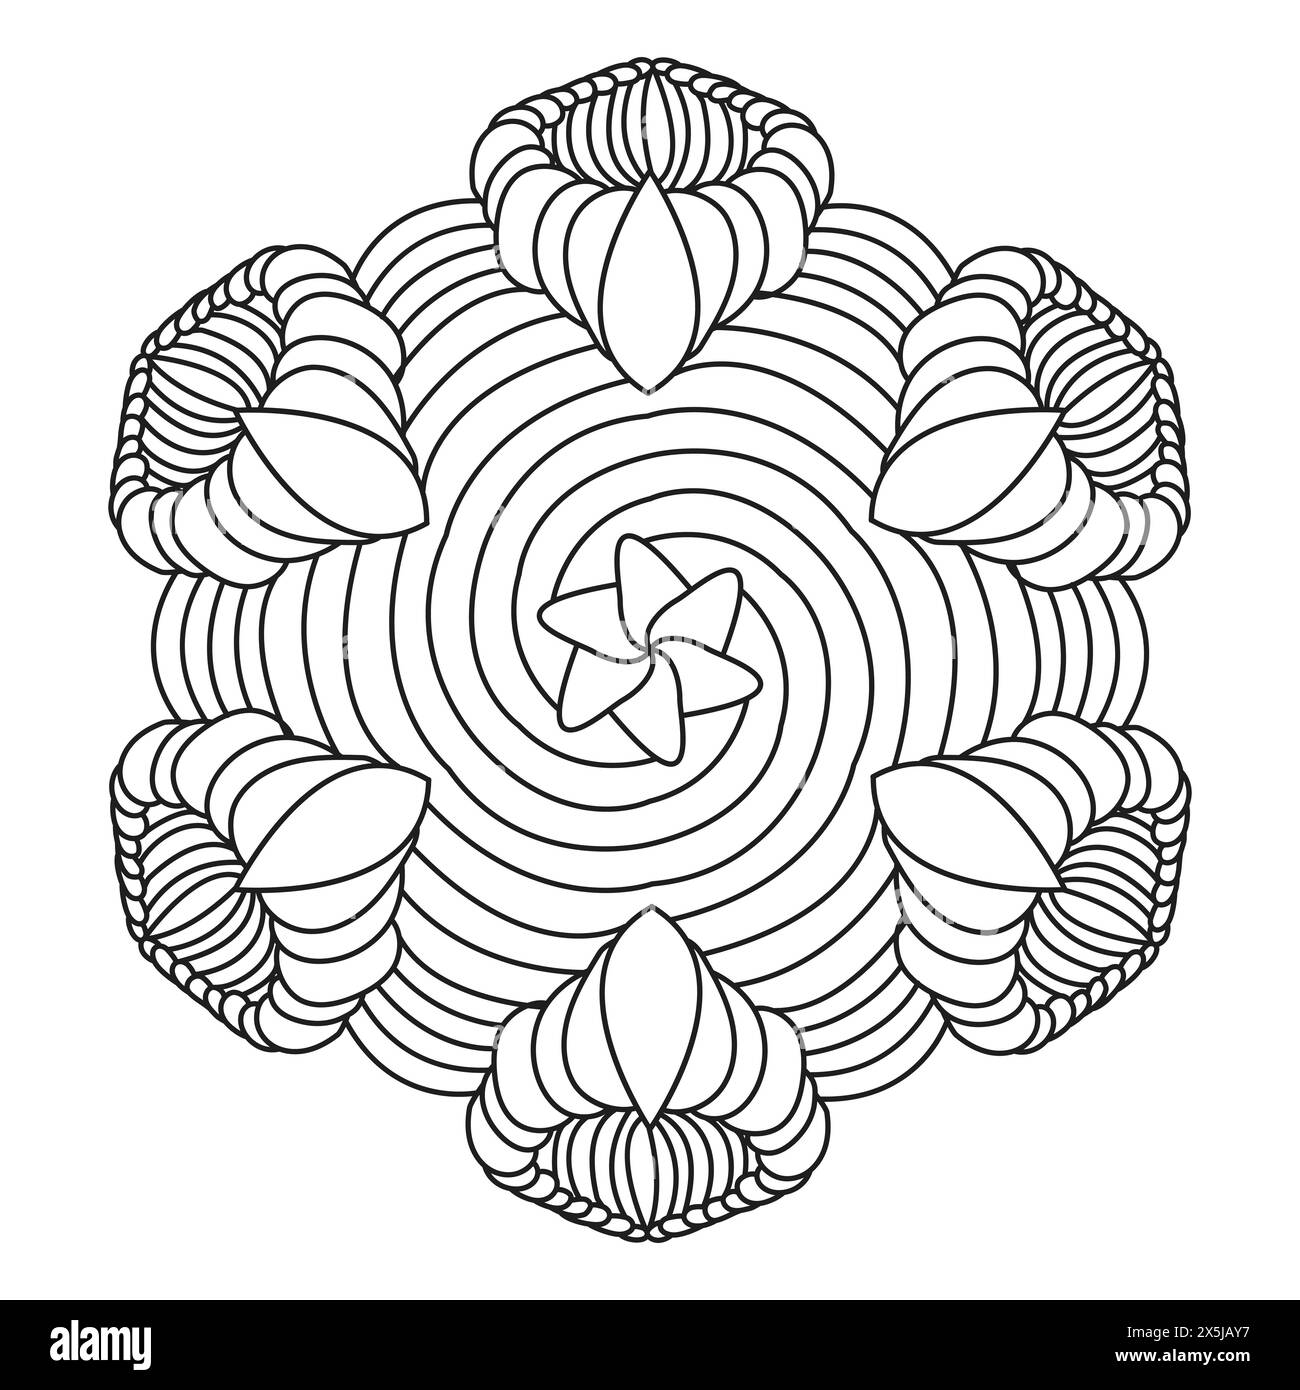 Pagina dei libri coloranti Mandala Spirals per l'interno del libro KDP. Petali pacifici, capacità di rilassarsi, esperienze cerebrali, Harmonous Haven, ritratti pacifici, Illustrazione Vettoriale